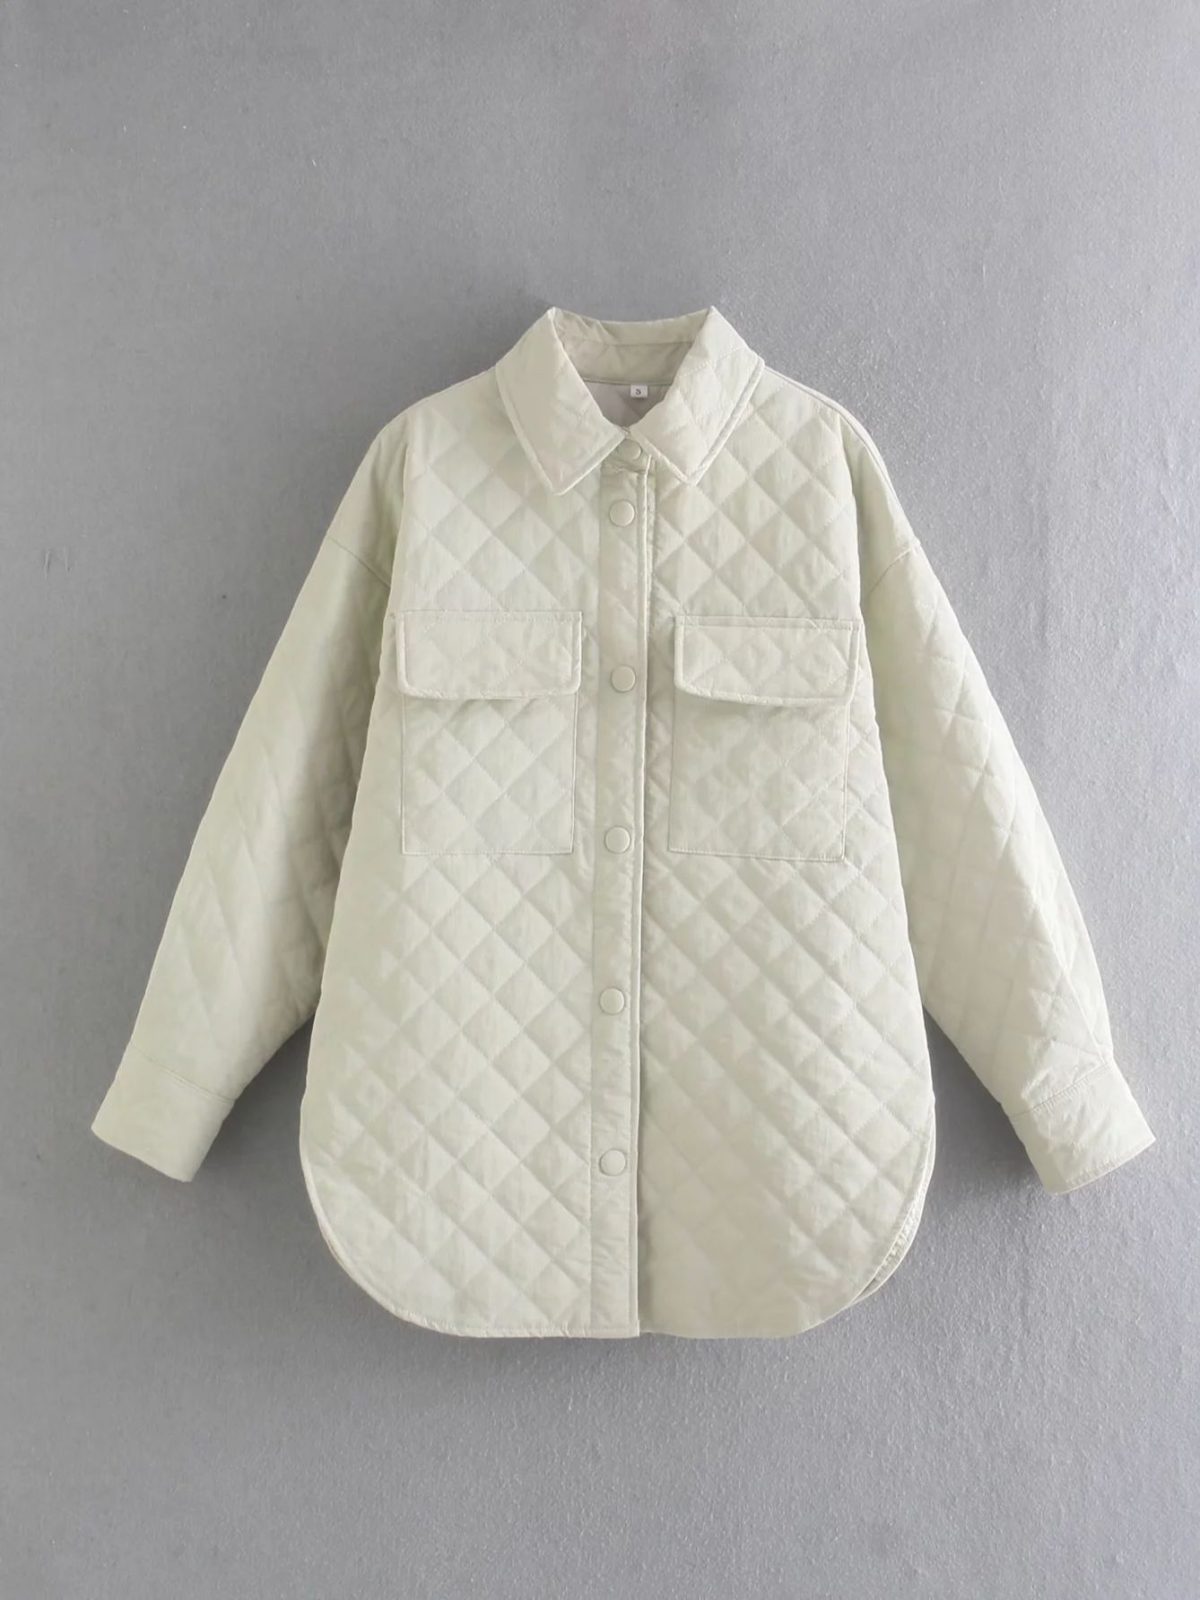 Long Sleeve Khaki Thin Parka Oversize Shirt Coat - Coats & Jackets - Uniqistic.com